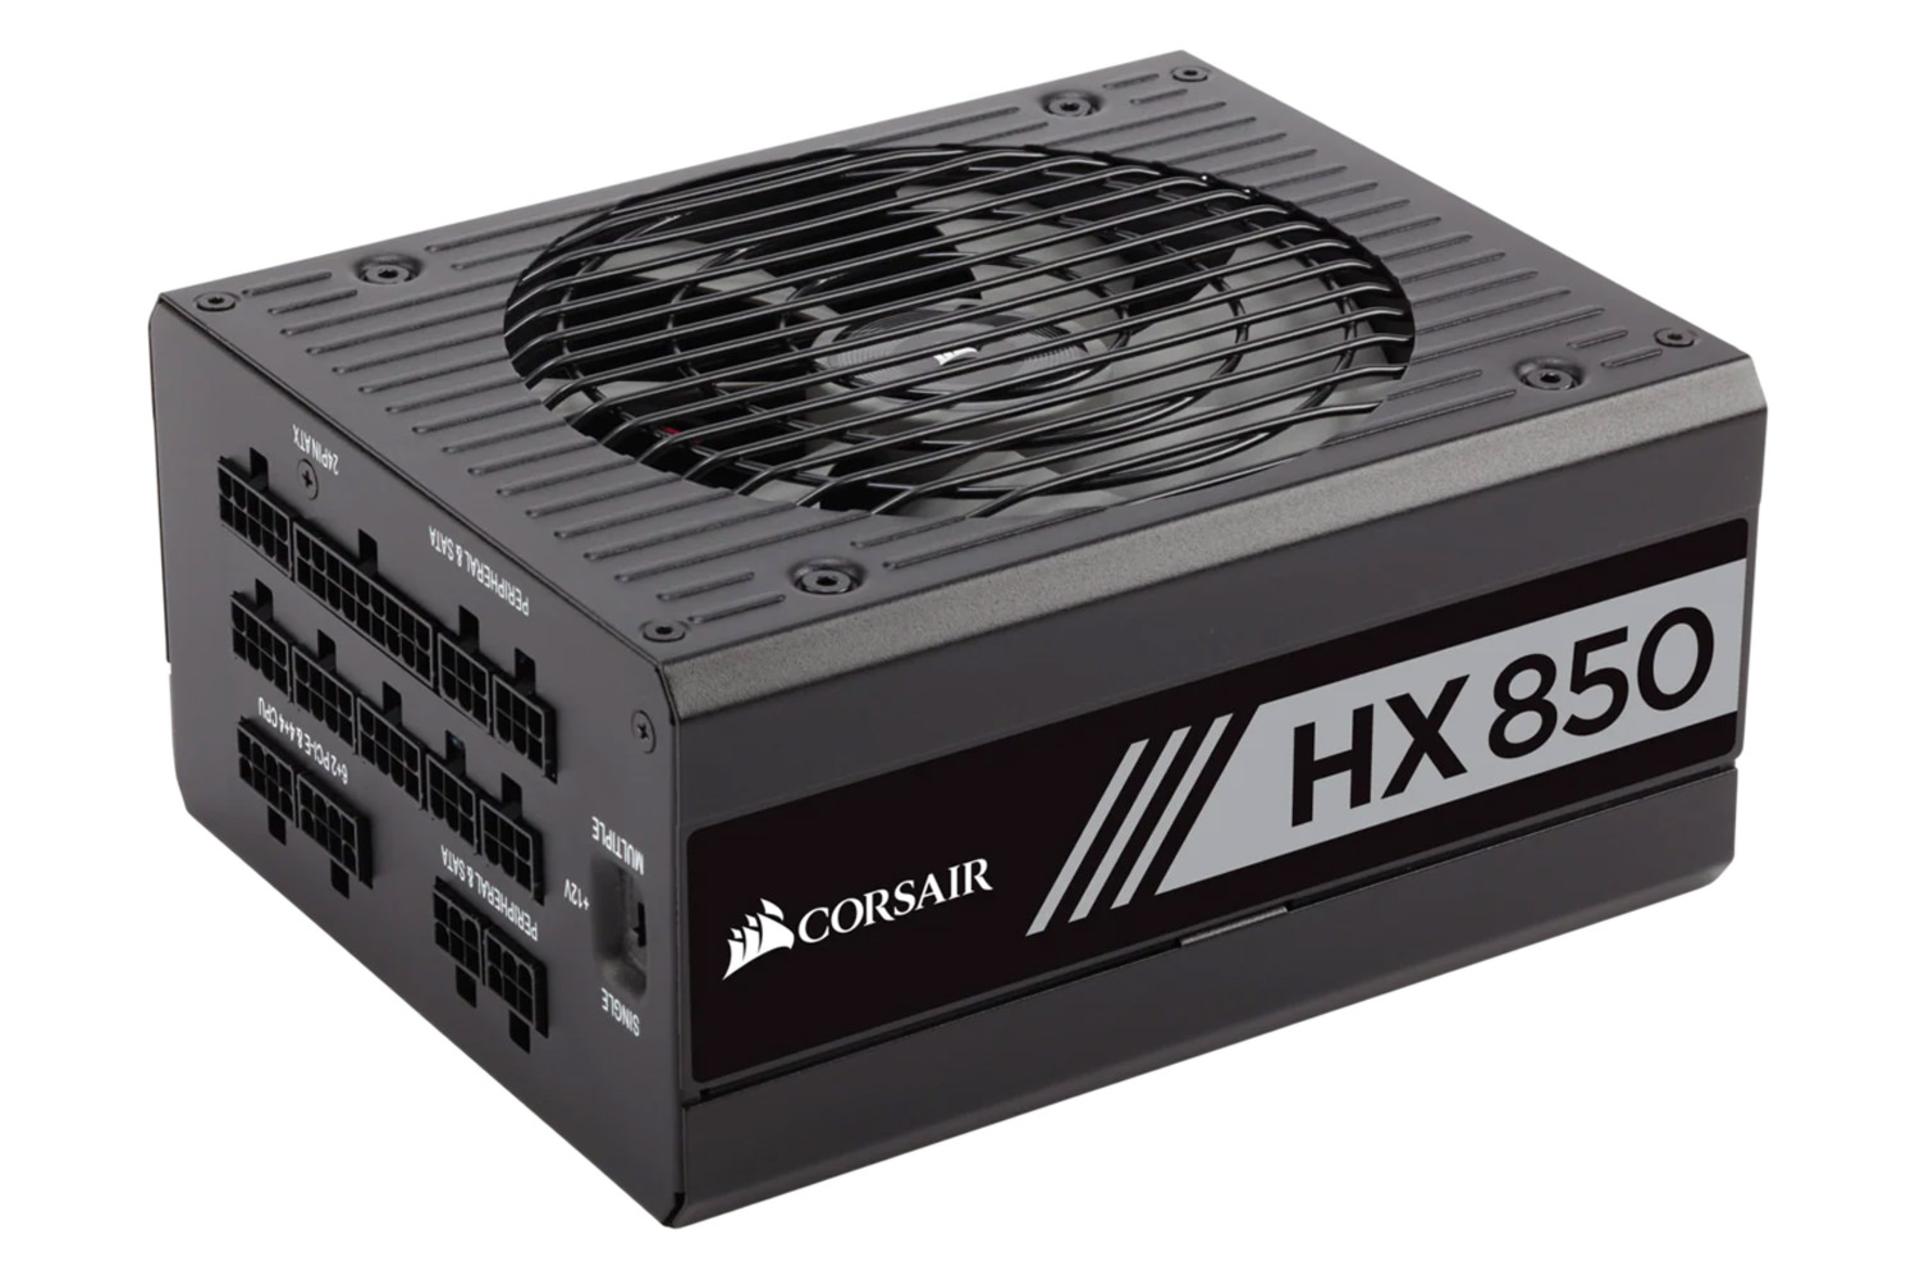 پاور کامپیوتر کورسیر HX850 Platinum با توان 850 وات